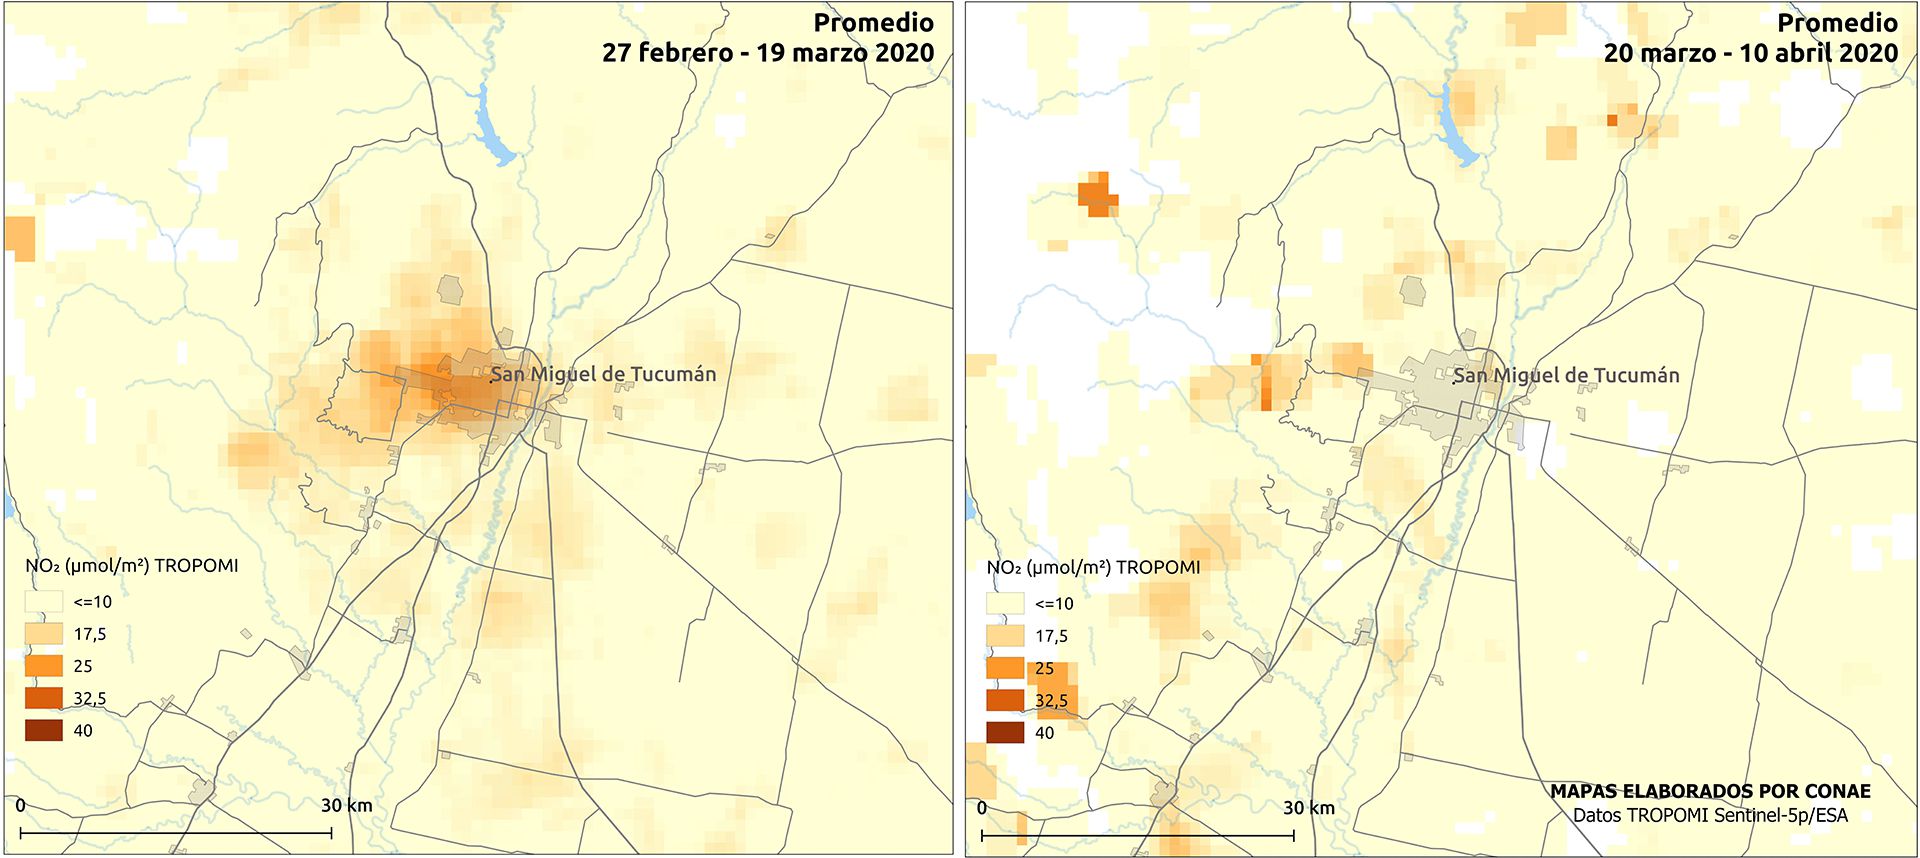 Mapa comparativo de NO2 en San Miguel de Tucumán, de febrero-marzo - marzo-abril (CONAE)